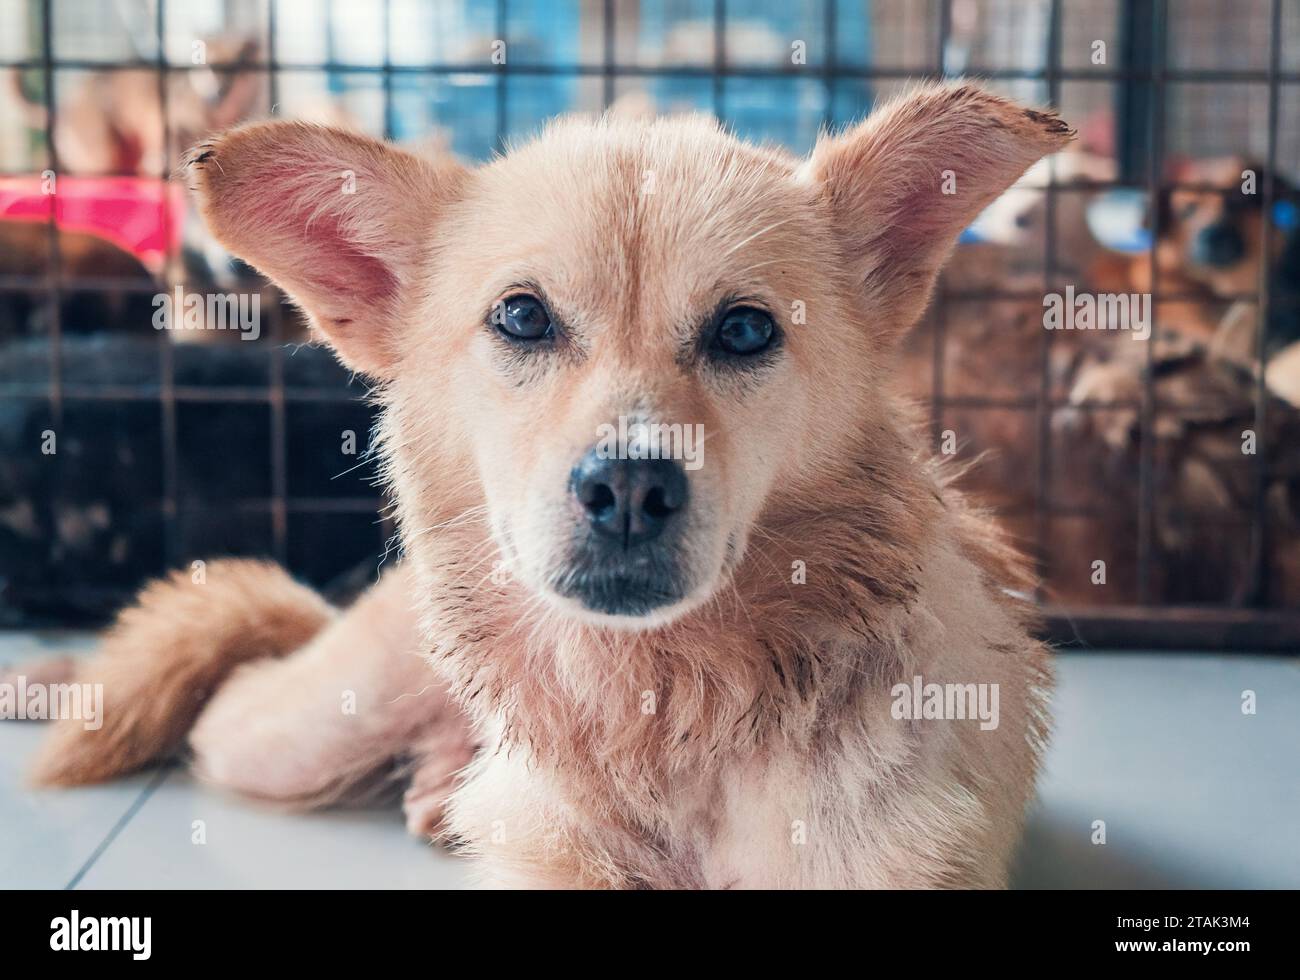 Cane randagio solitario che giace sul pavimento in un rifugio, soffre di fame vita miserabile, senzatetto. Concetto di rifugio per animali. Foto Stock